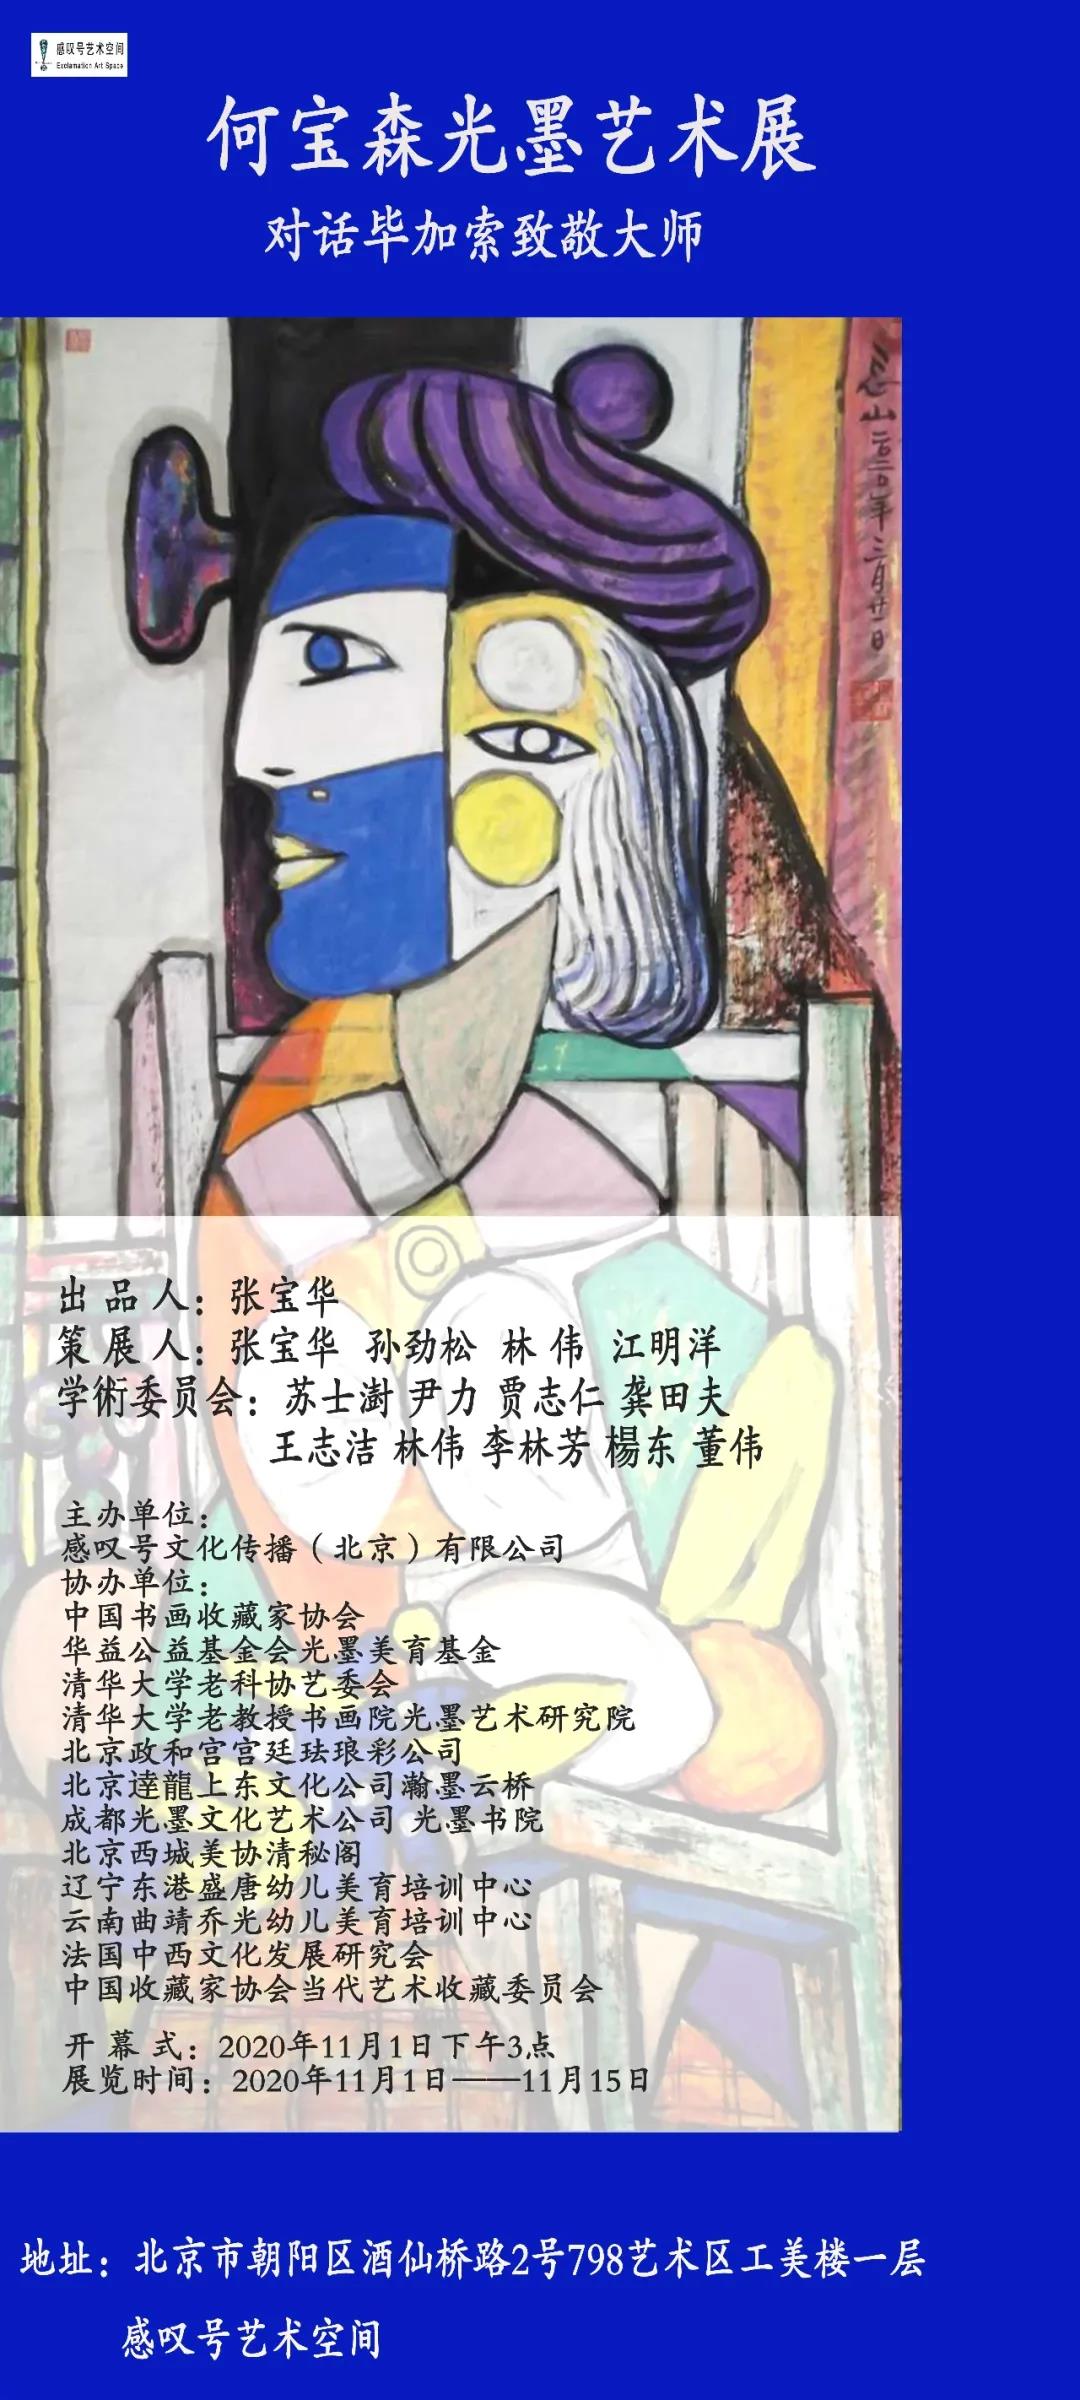 何宝森光墨艺术展——对话毕加索致敬大师